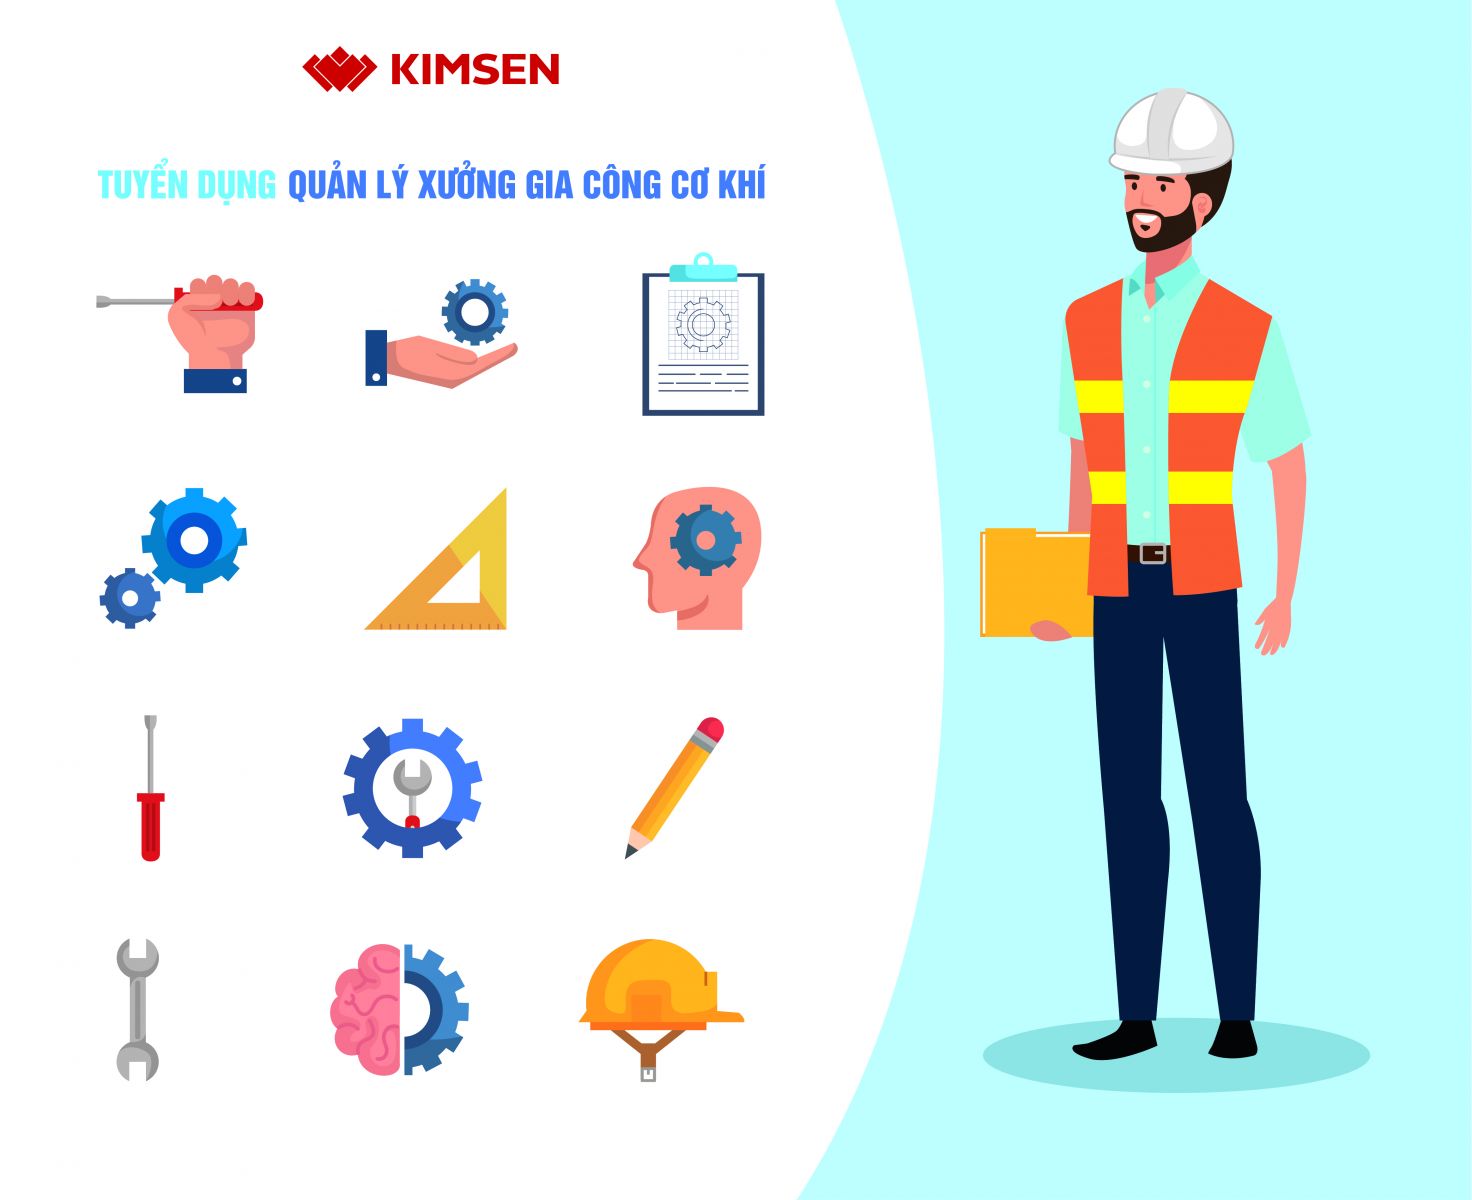 KIMSEN - Tuyển dụng Quản lý xưởng Gia công Cơ khí